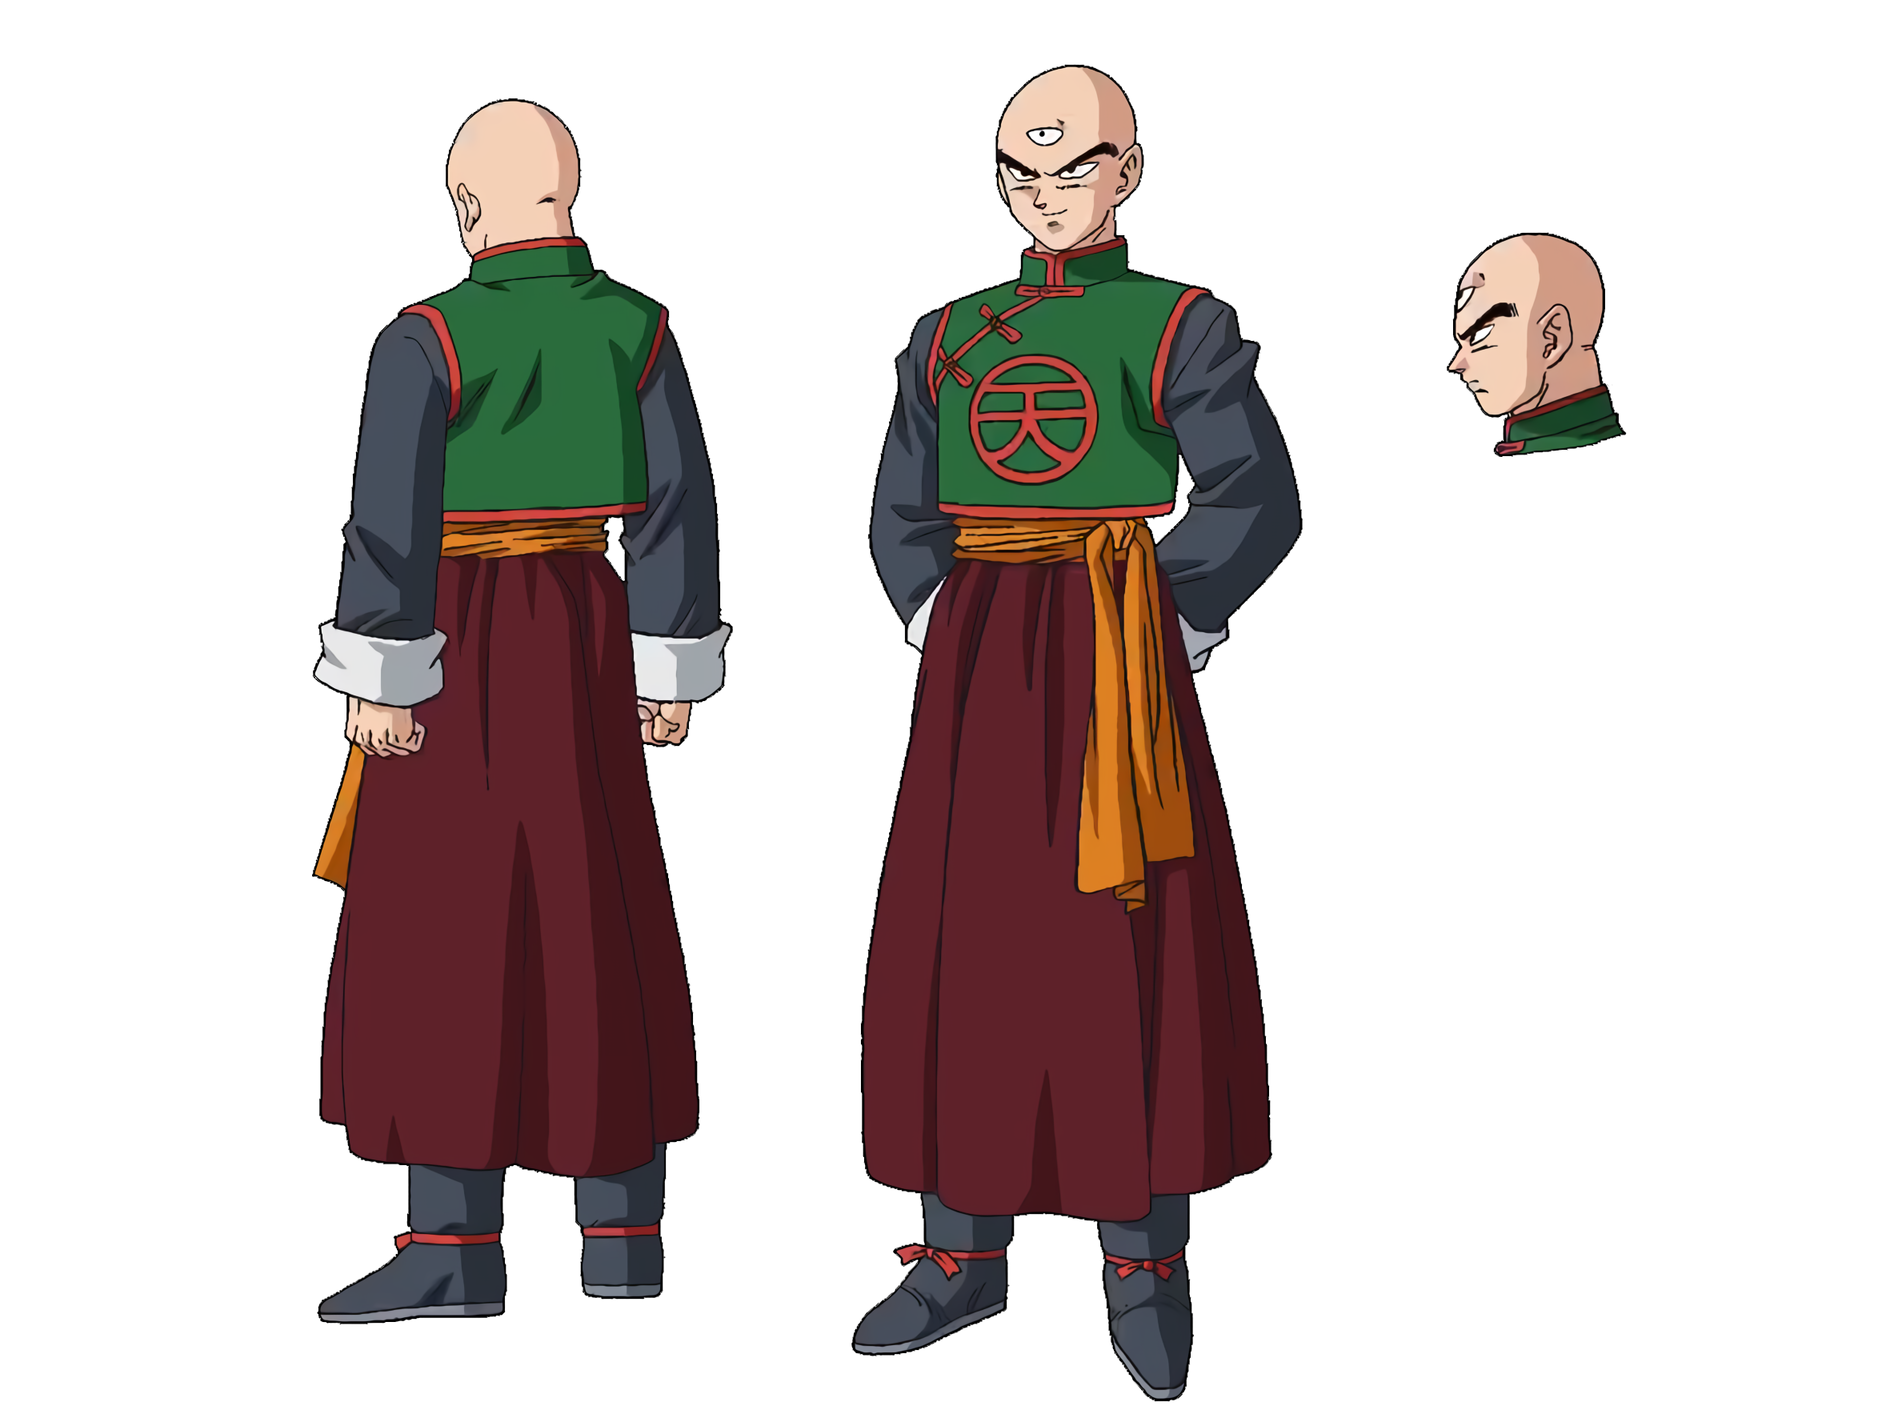 Goku (Battle of Gods] render [Website] by Maxiuchiha22 on DeviantArt